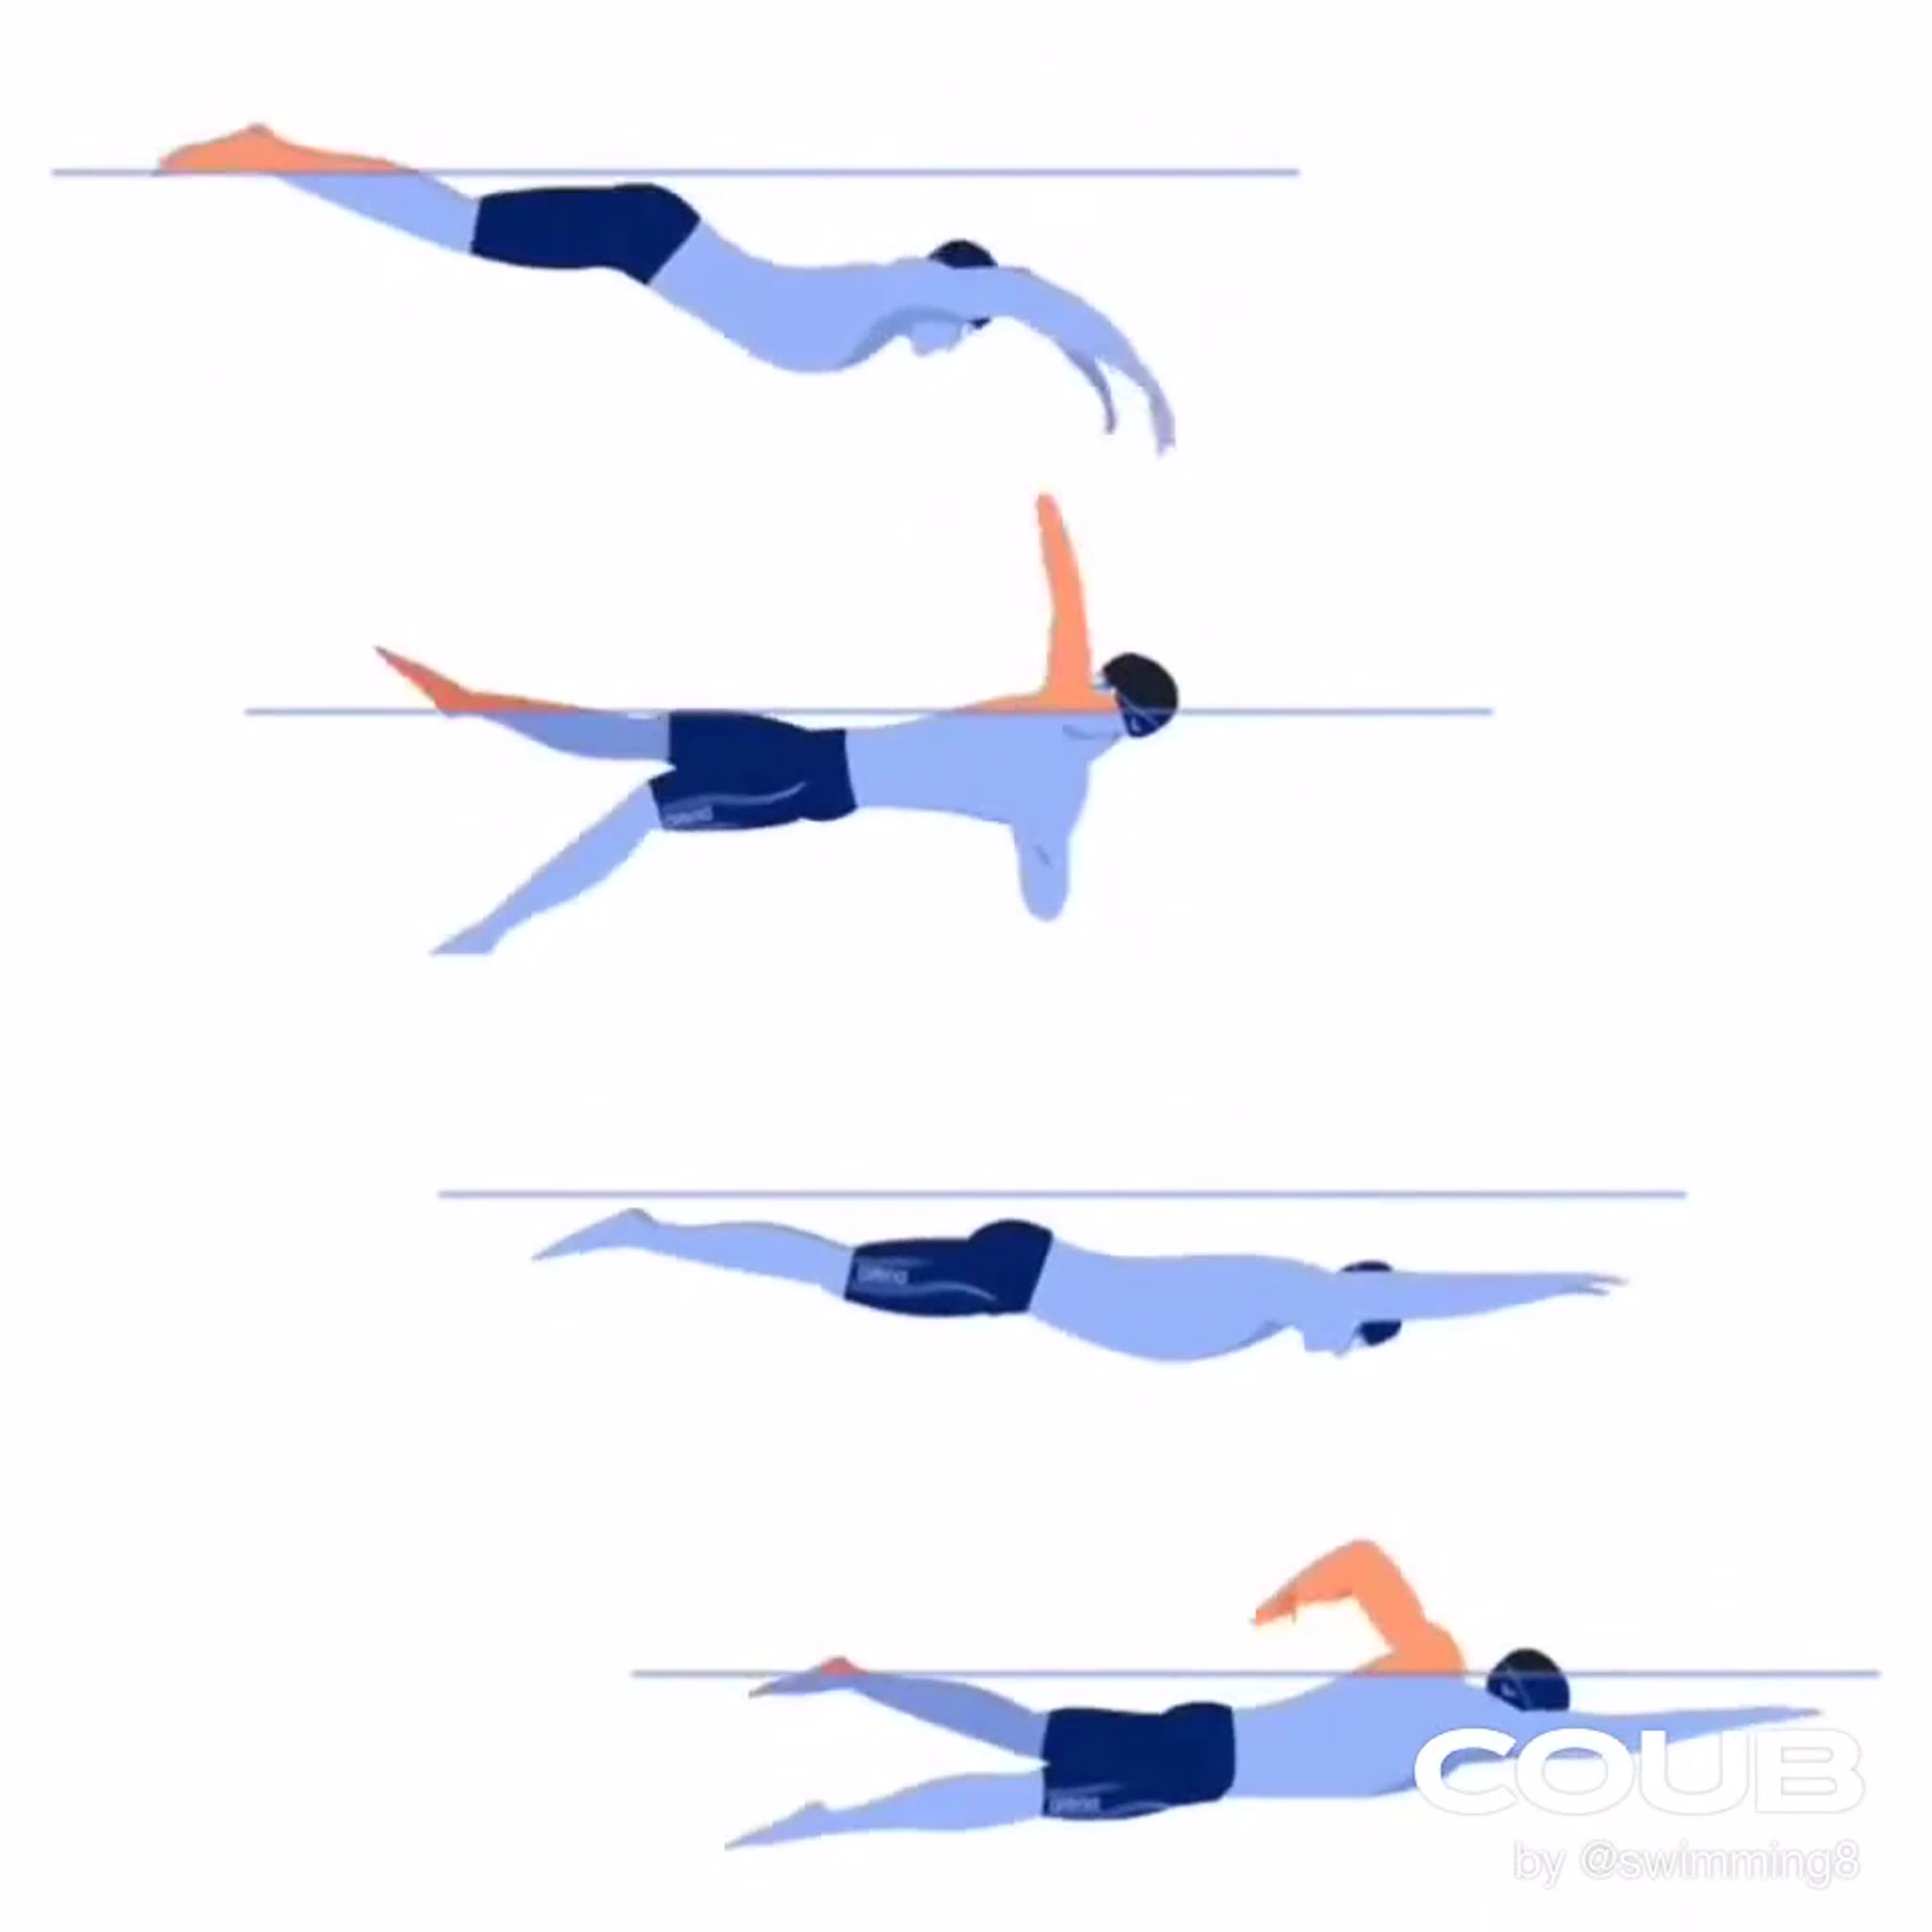 Техника плавания стилем баттерфляй: самый эффектный и сложный стиль